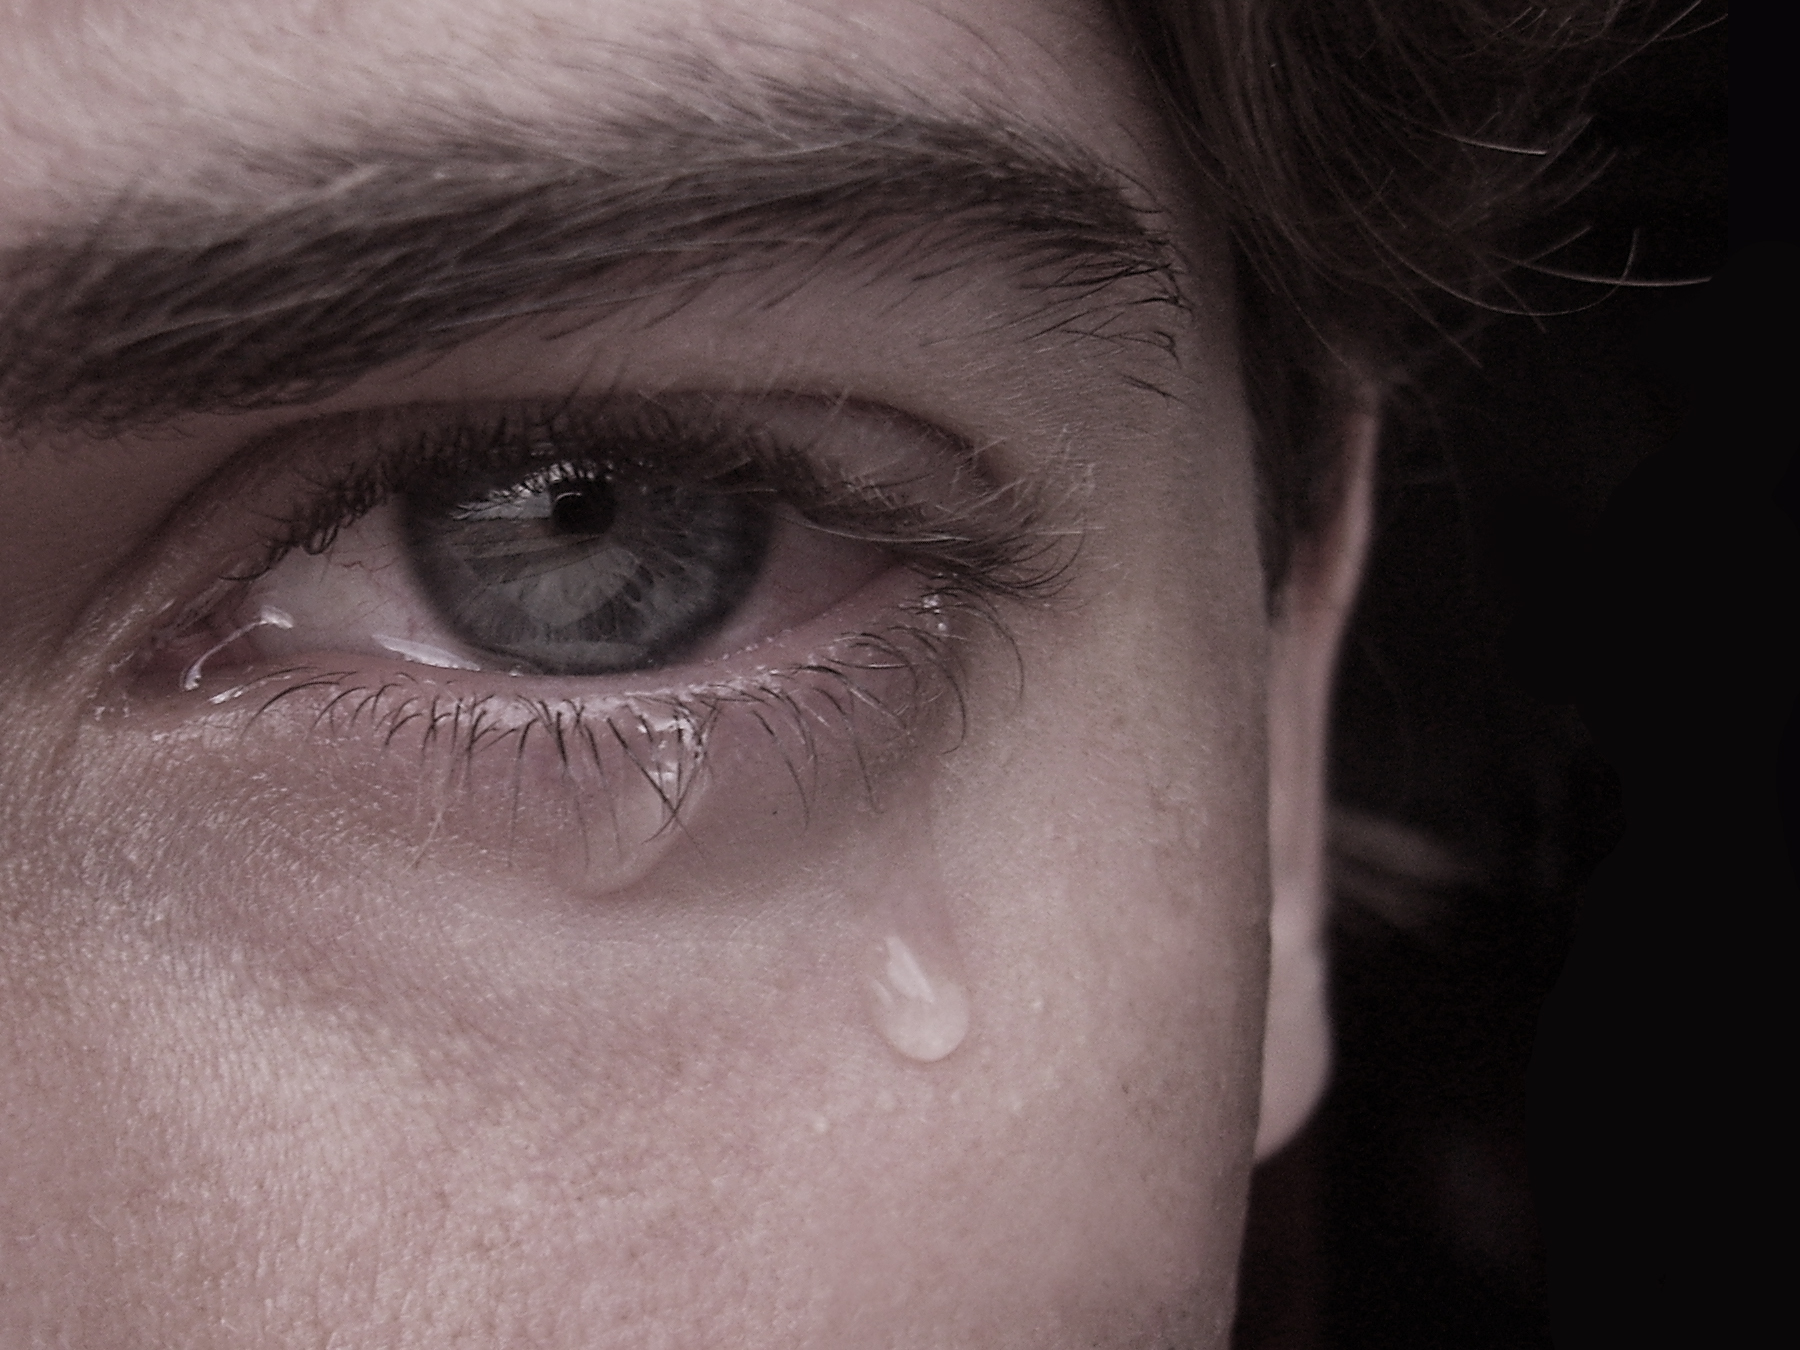 Το κλάμα βοηθά στη συναισθηματική αποφόρτιση